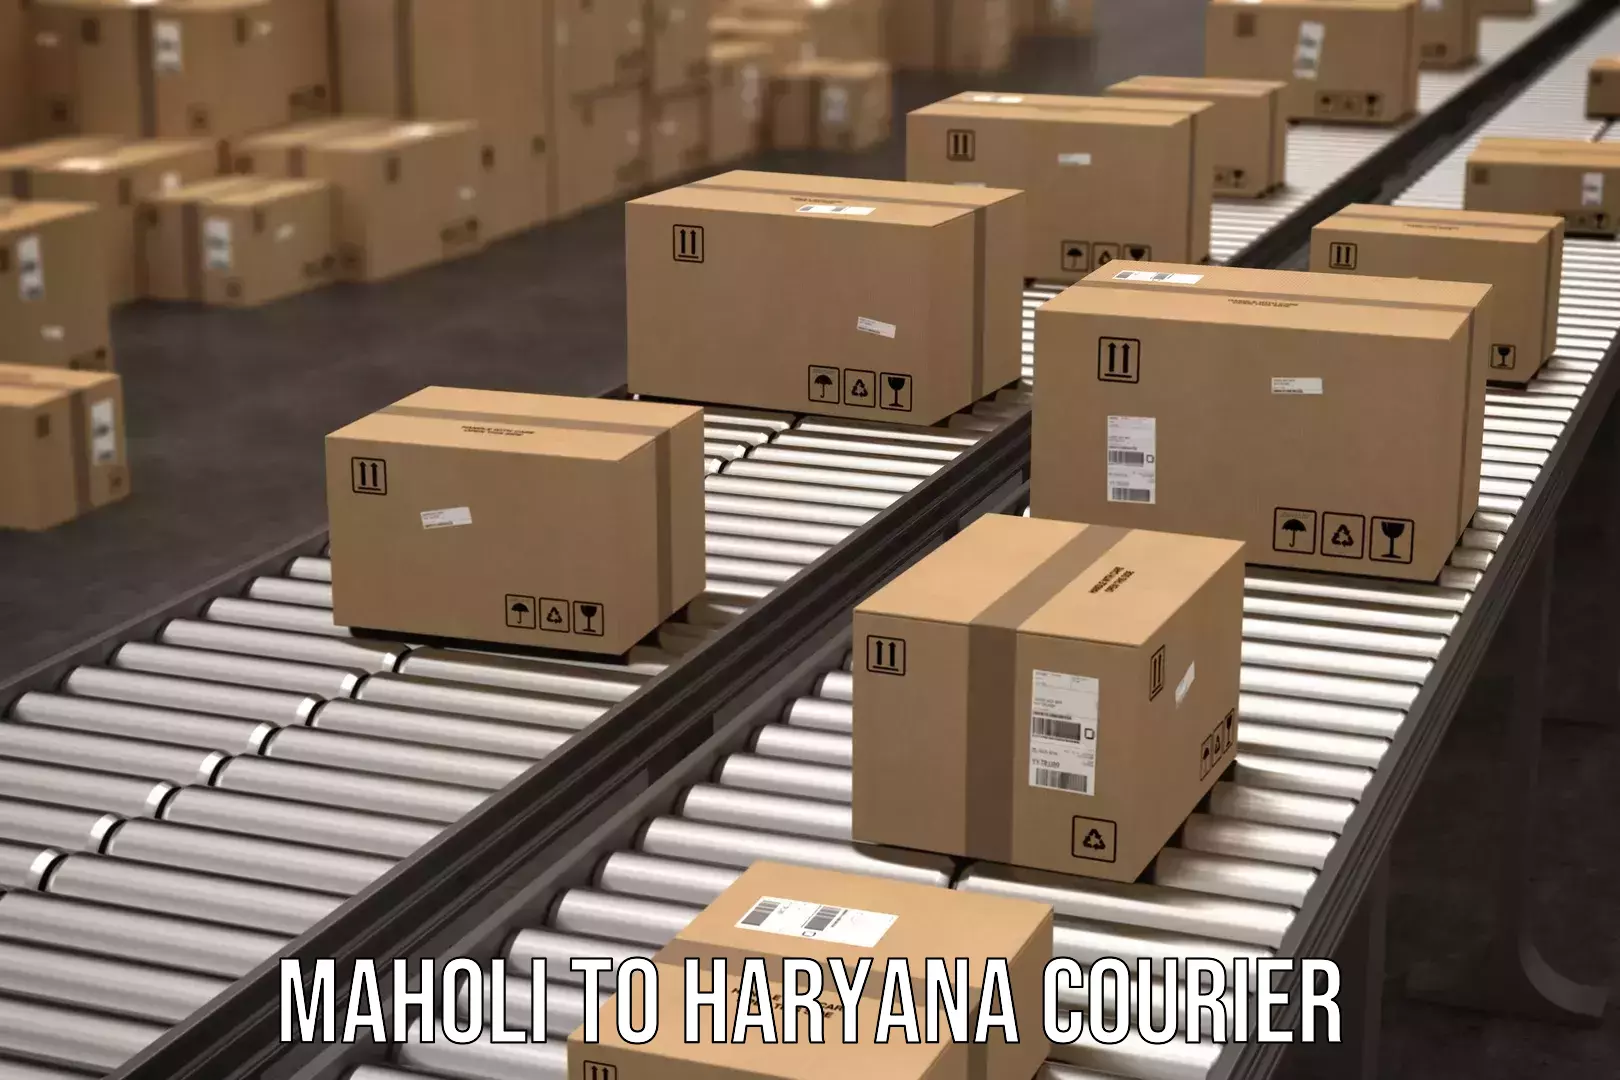 Express logistics service Maholi to Haryana